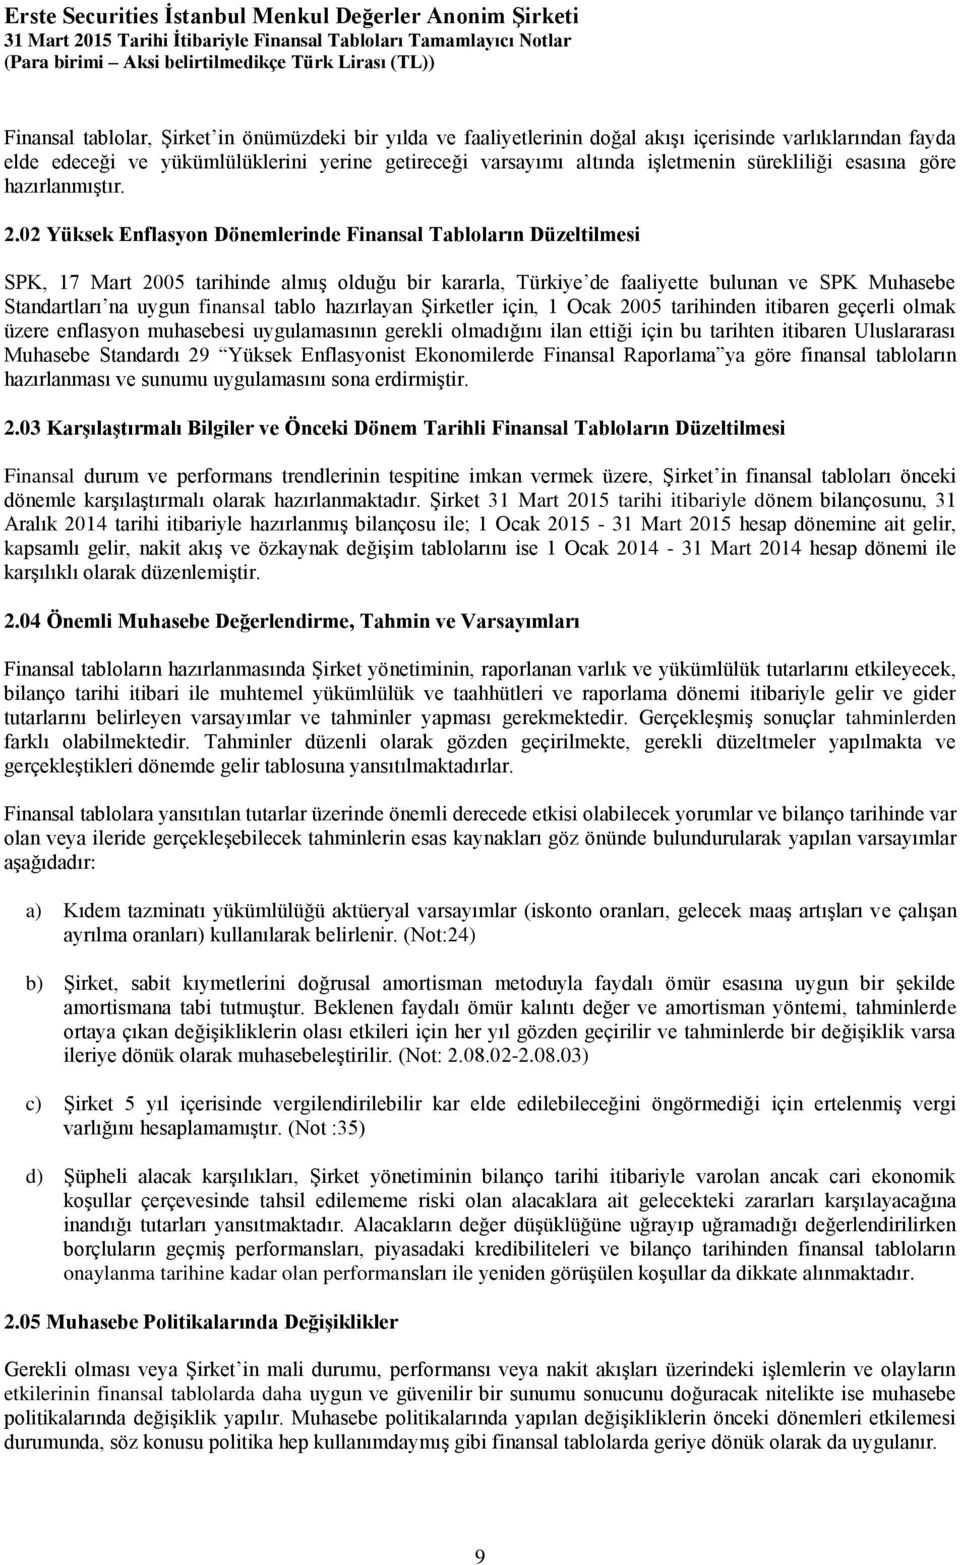 02 Yüksek Enflasyon Dönemlerinde Finansal Tabloların Düzeltilmesi SPK, 17 Mart 2005 tarihinde almış olduğu bir kararla, Türkiye de faaliyette bulunan ve SPK Muhasebe Standartları na uygun finansal